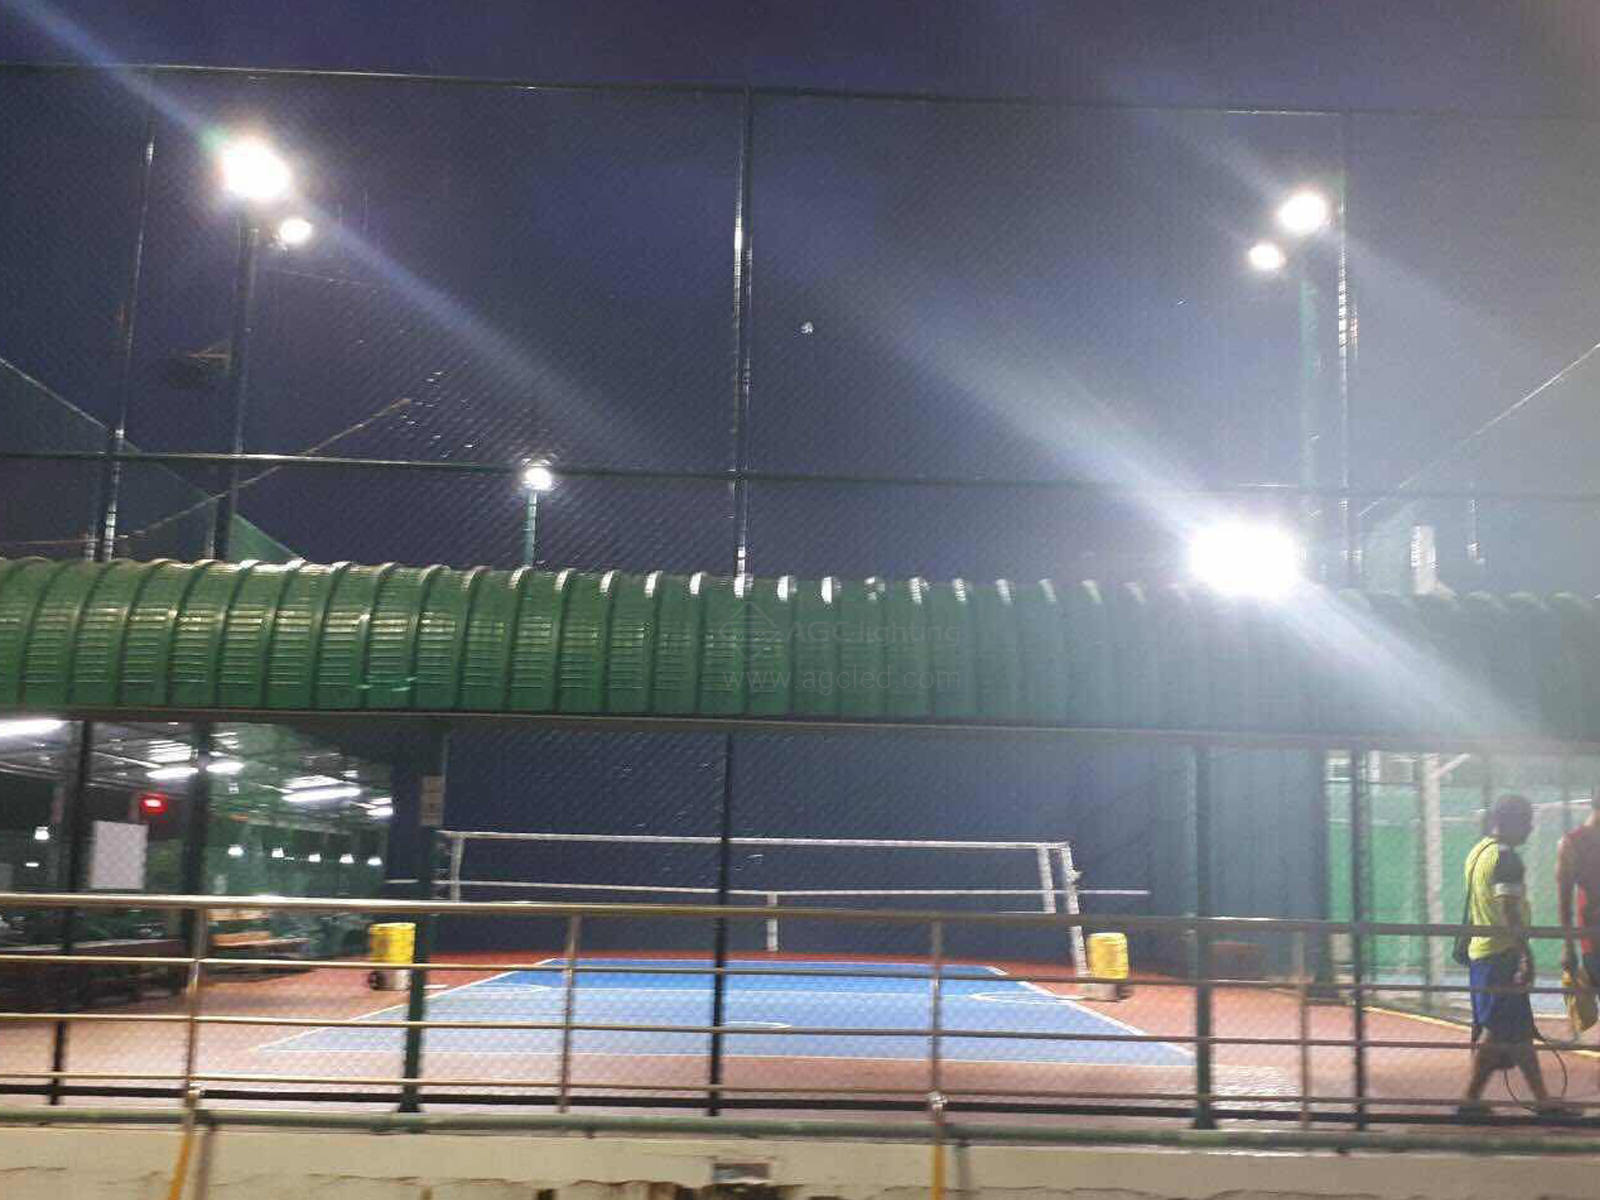 14pcs flood light in tennis court